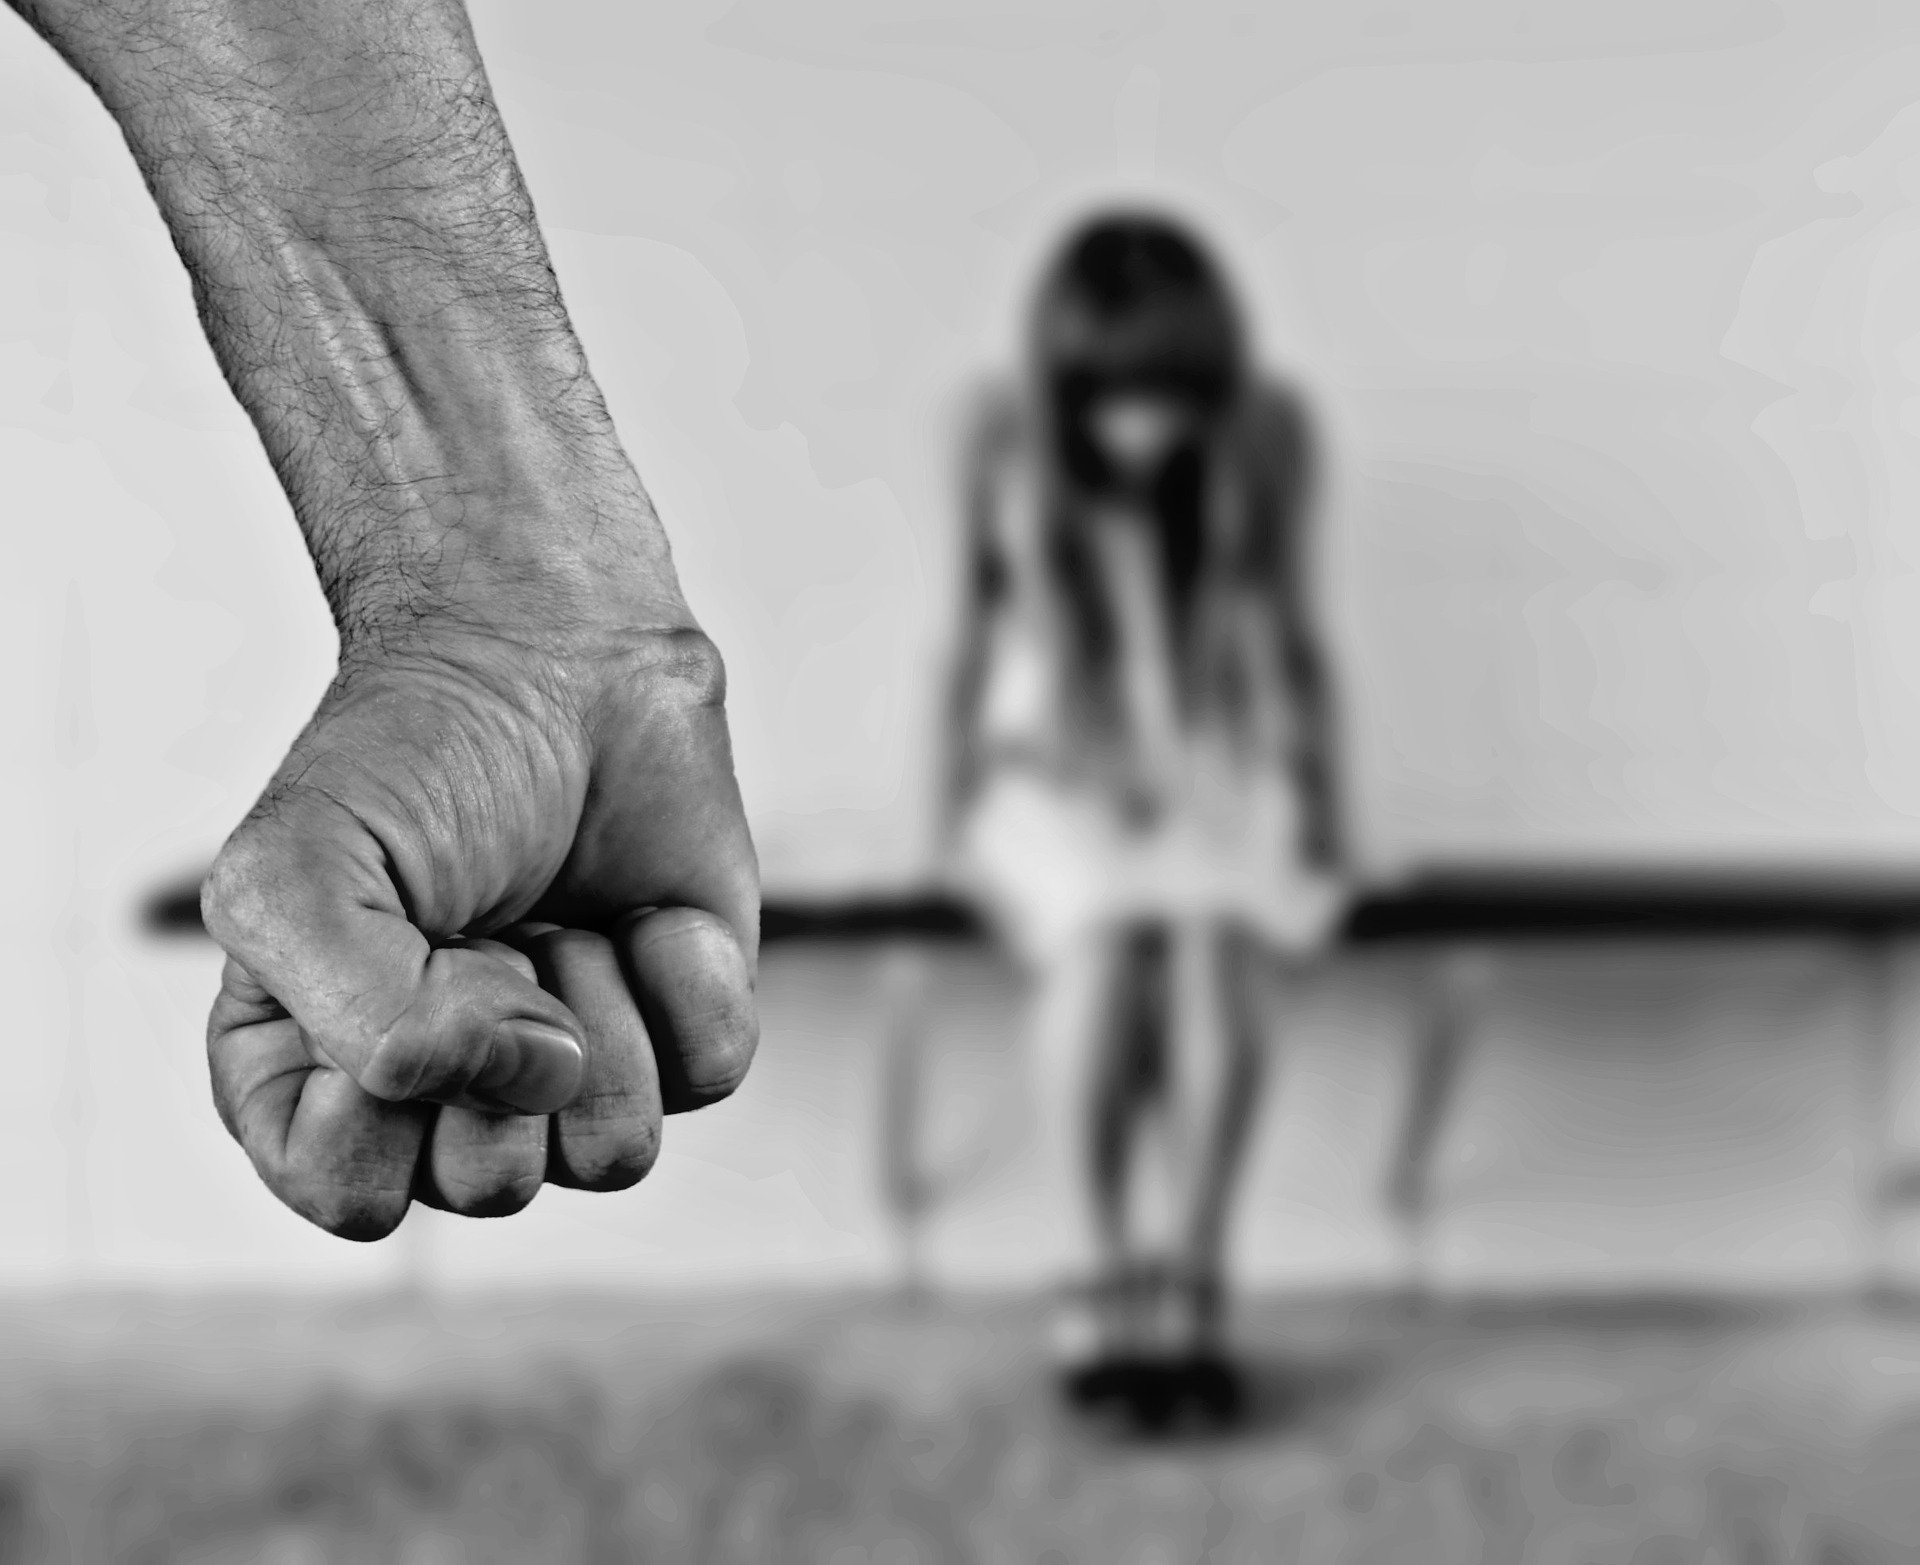 Los requirentes no podrán tener denuncias o procesos por violencia familiar. (Pixabay)